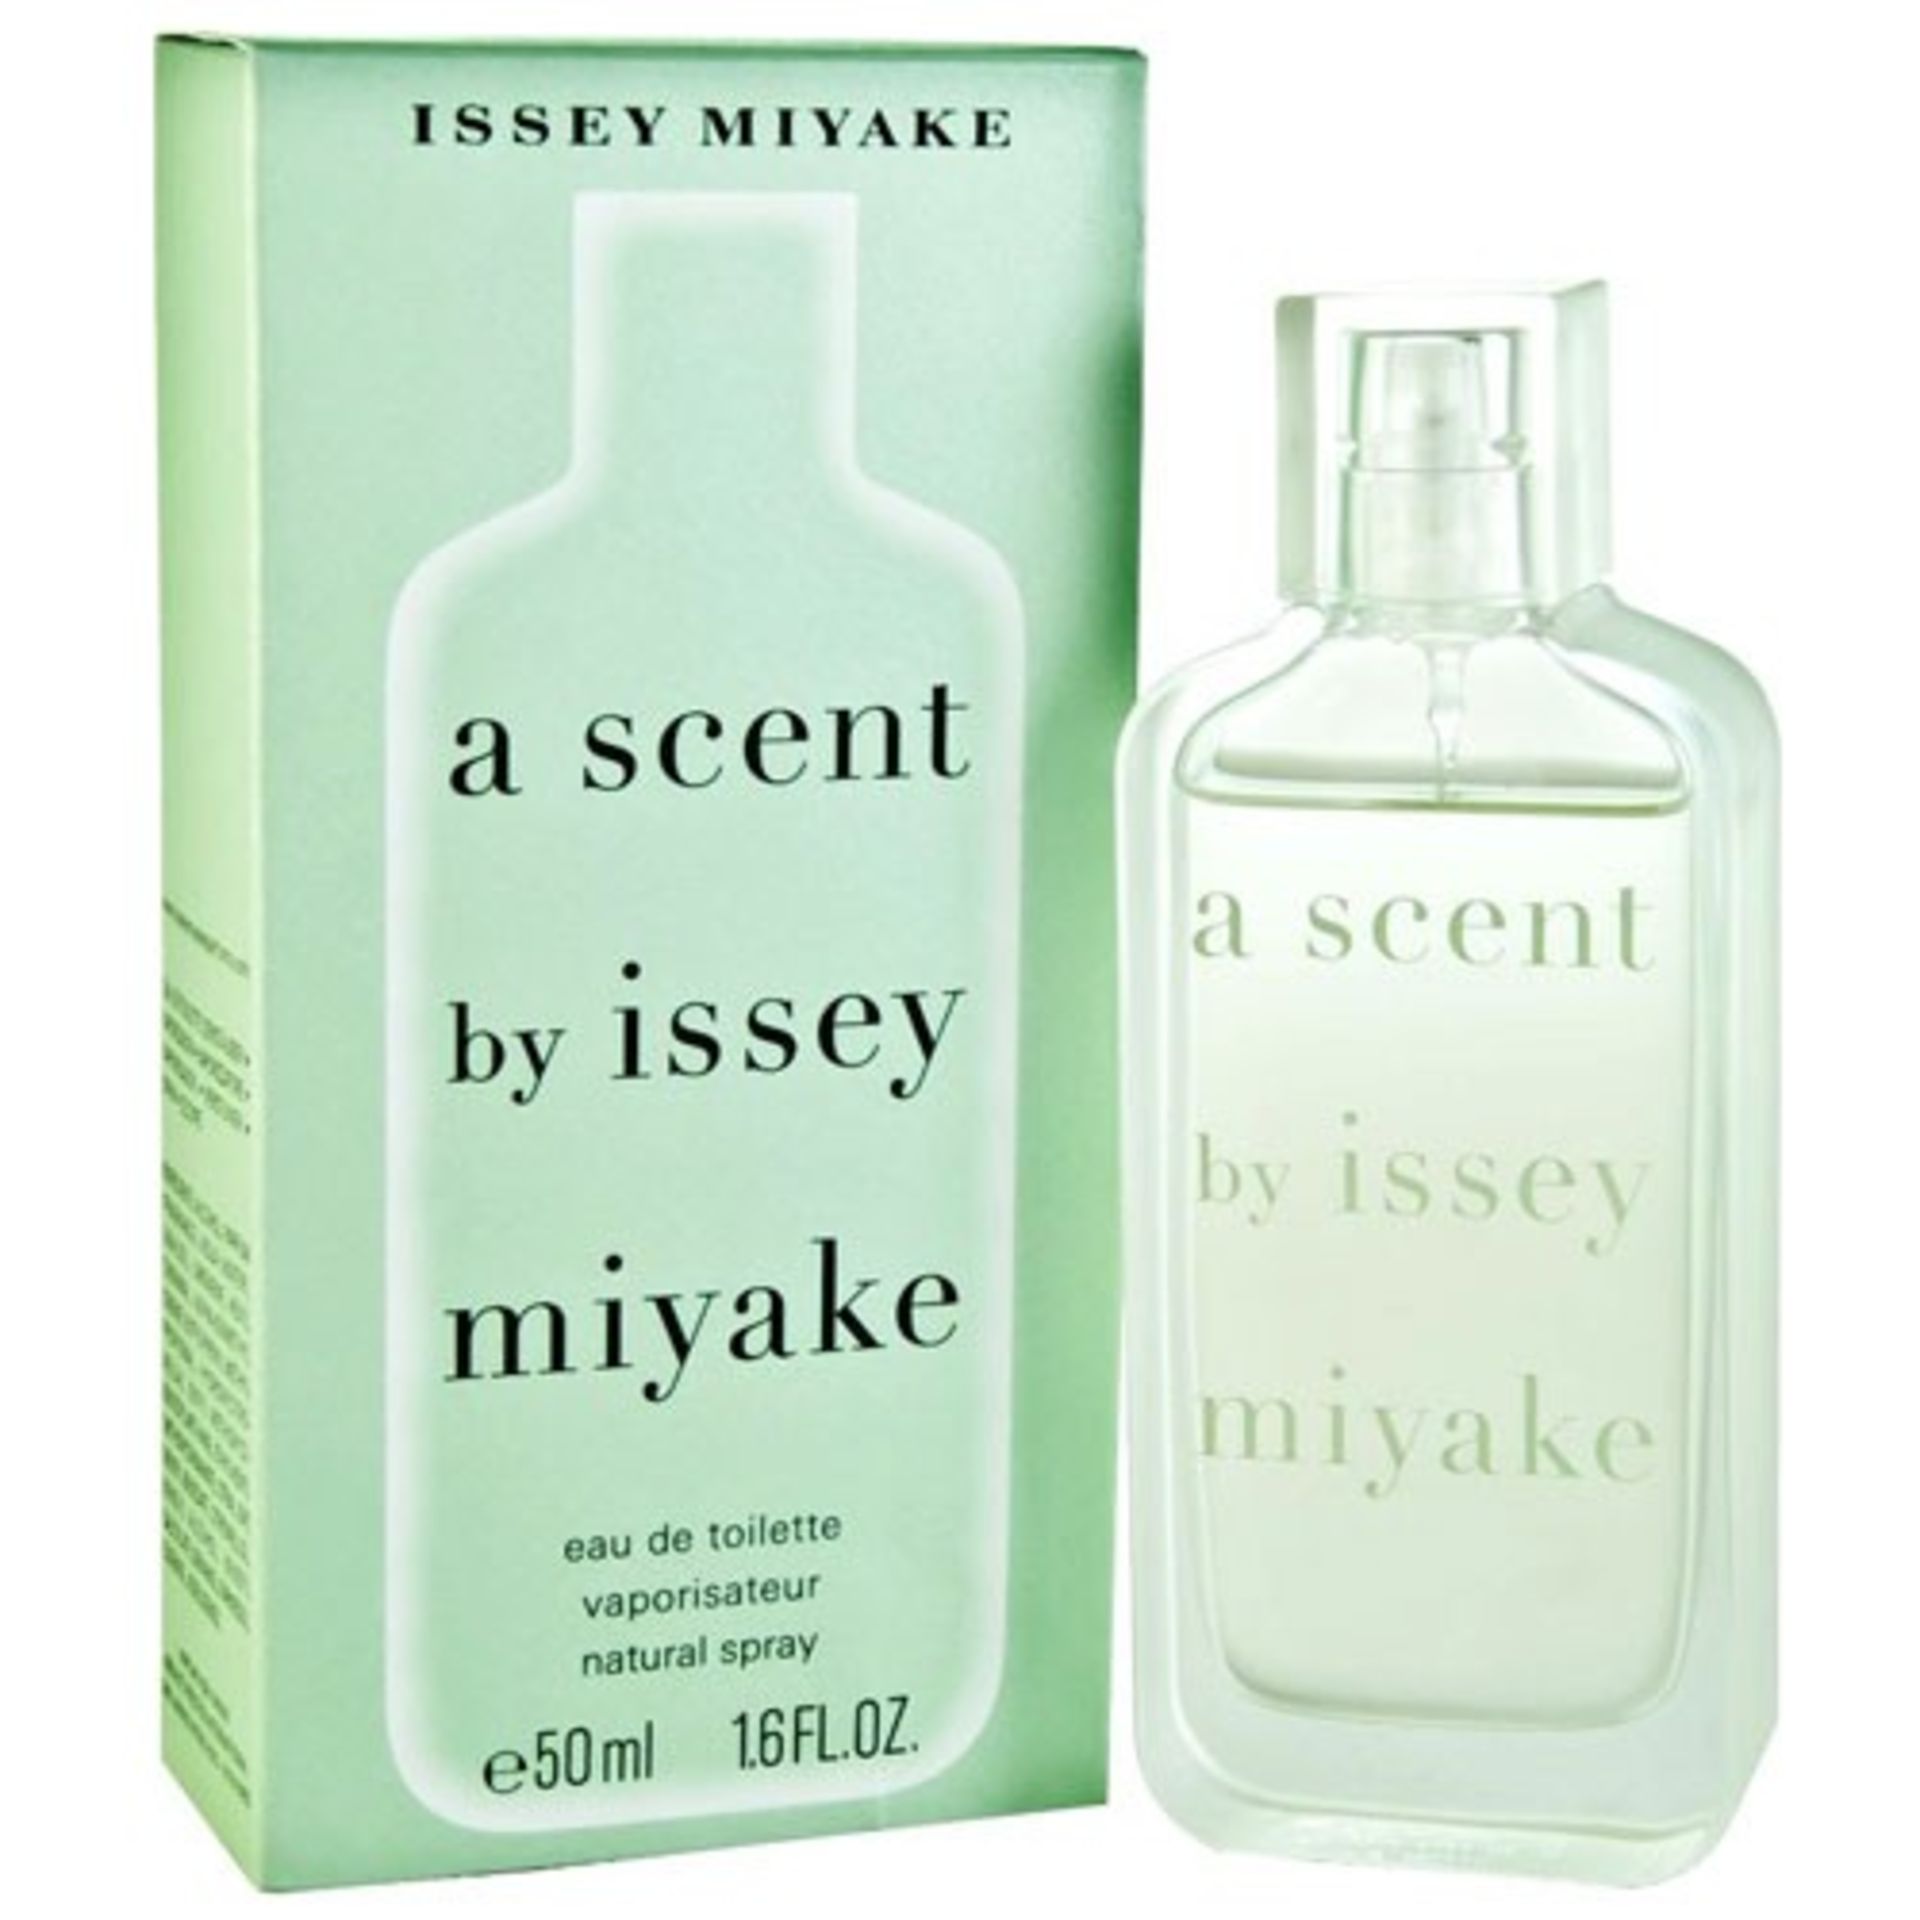 V Brand New Issey Miyake A Scent EDT Spray 50ml eBay Price £54.39